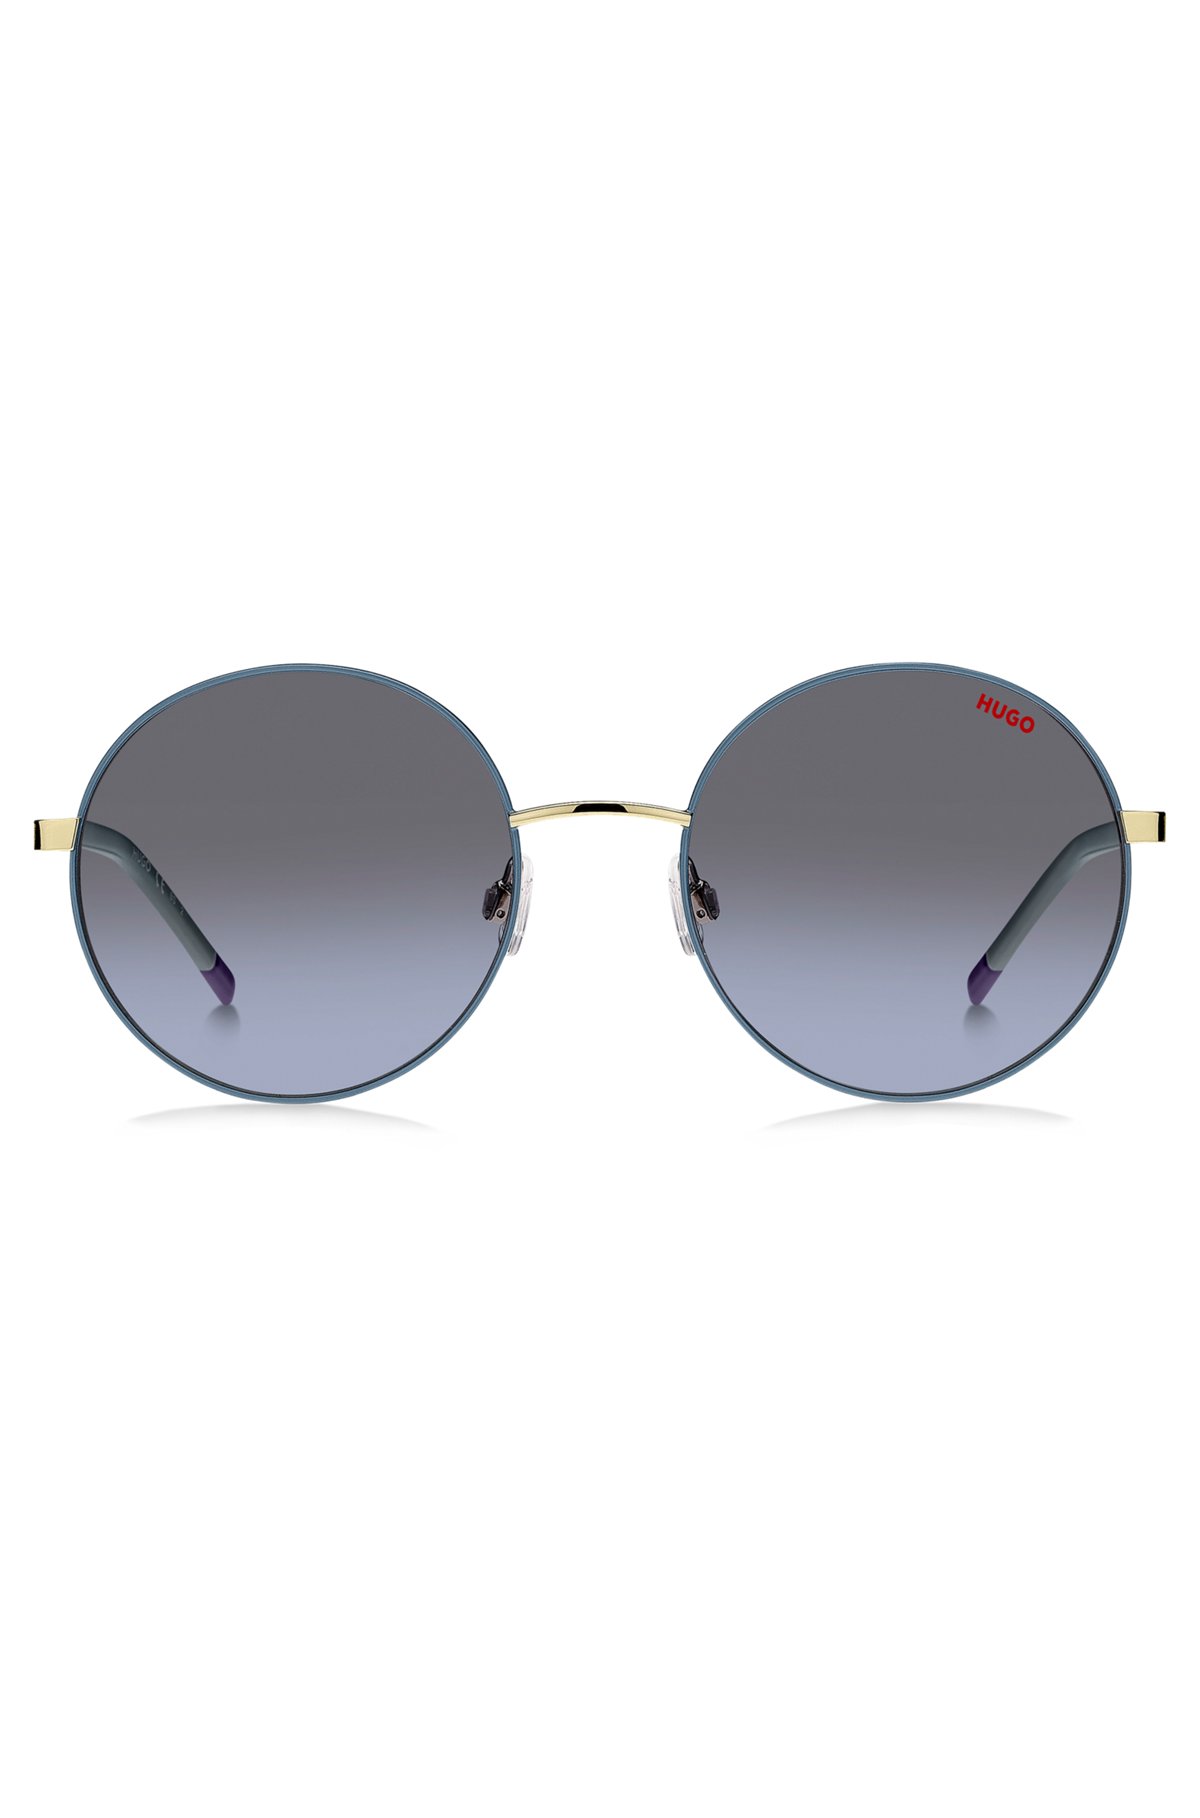 Металлические солнцезащитные очки с дужками из нержавеющей стали, Синий